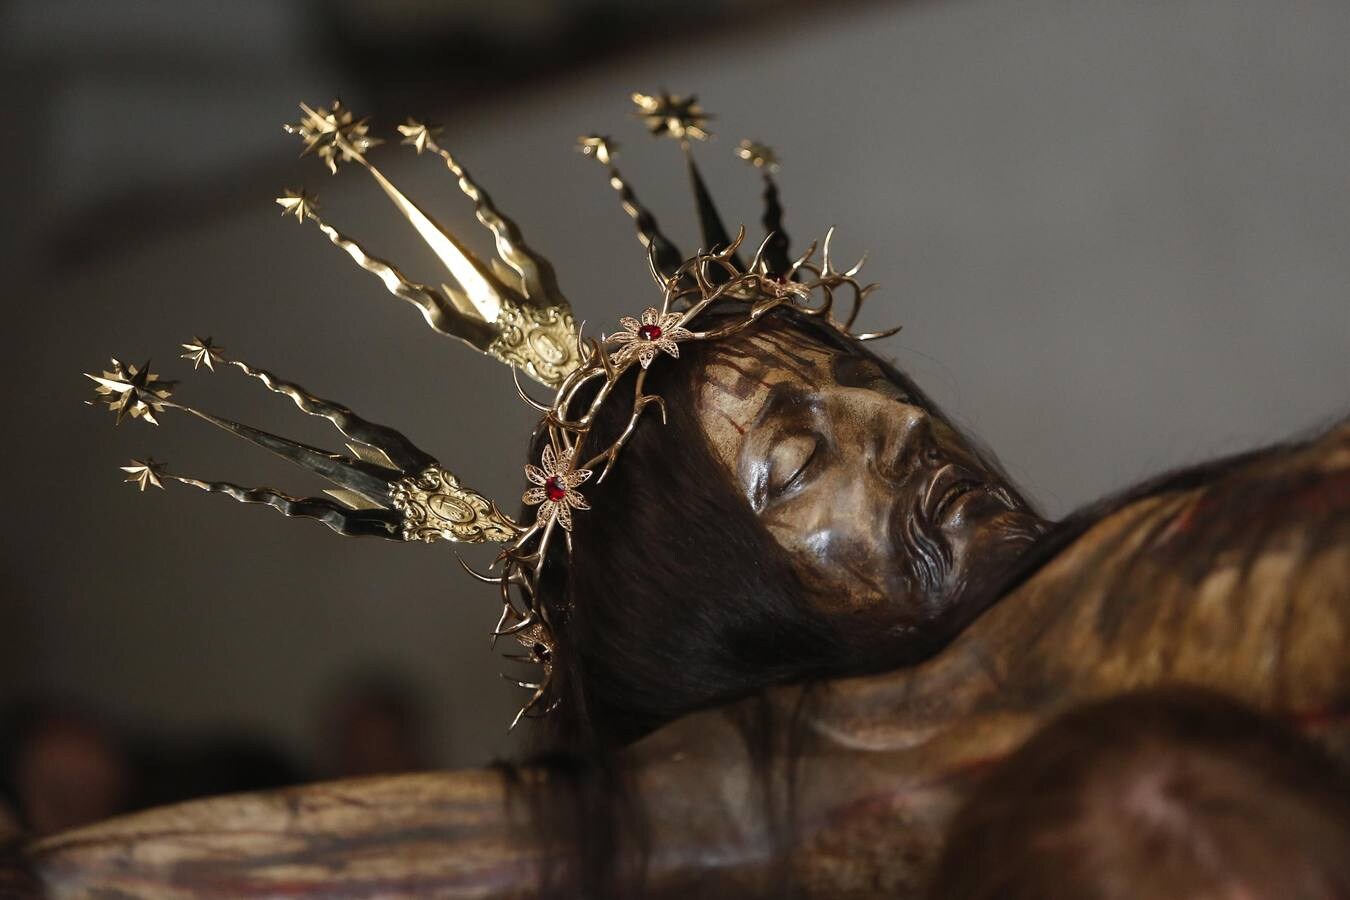 Los vía crucis del Viernes de Dolores, en imágenes